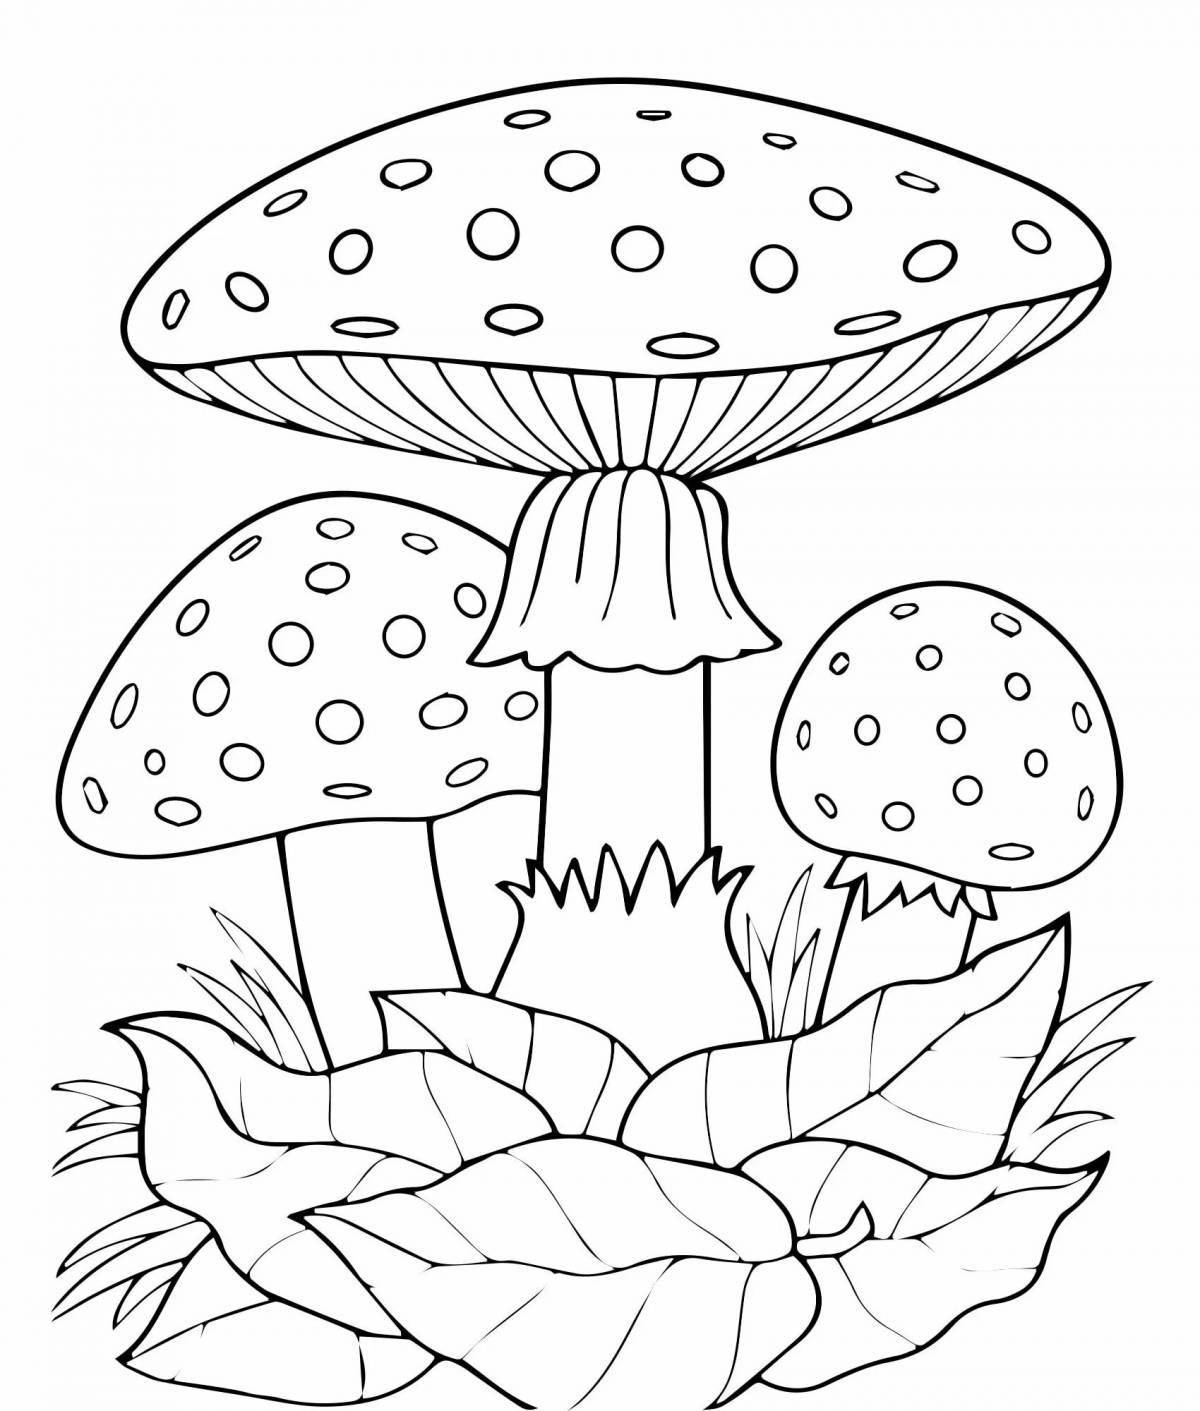 Яркая раскраска грибов для детей 3-4 лет